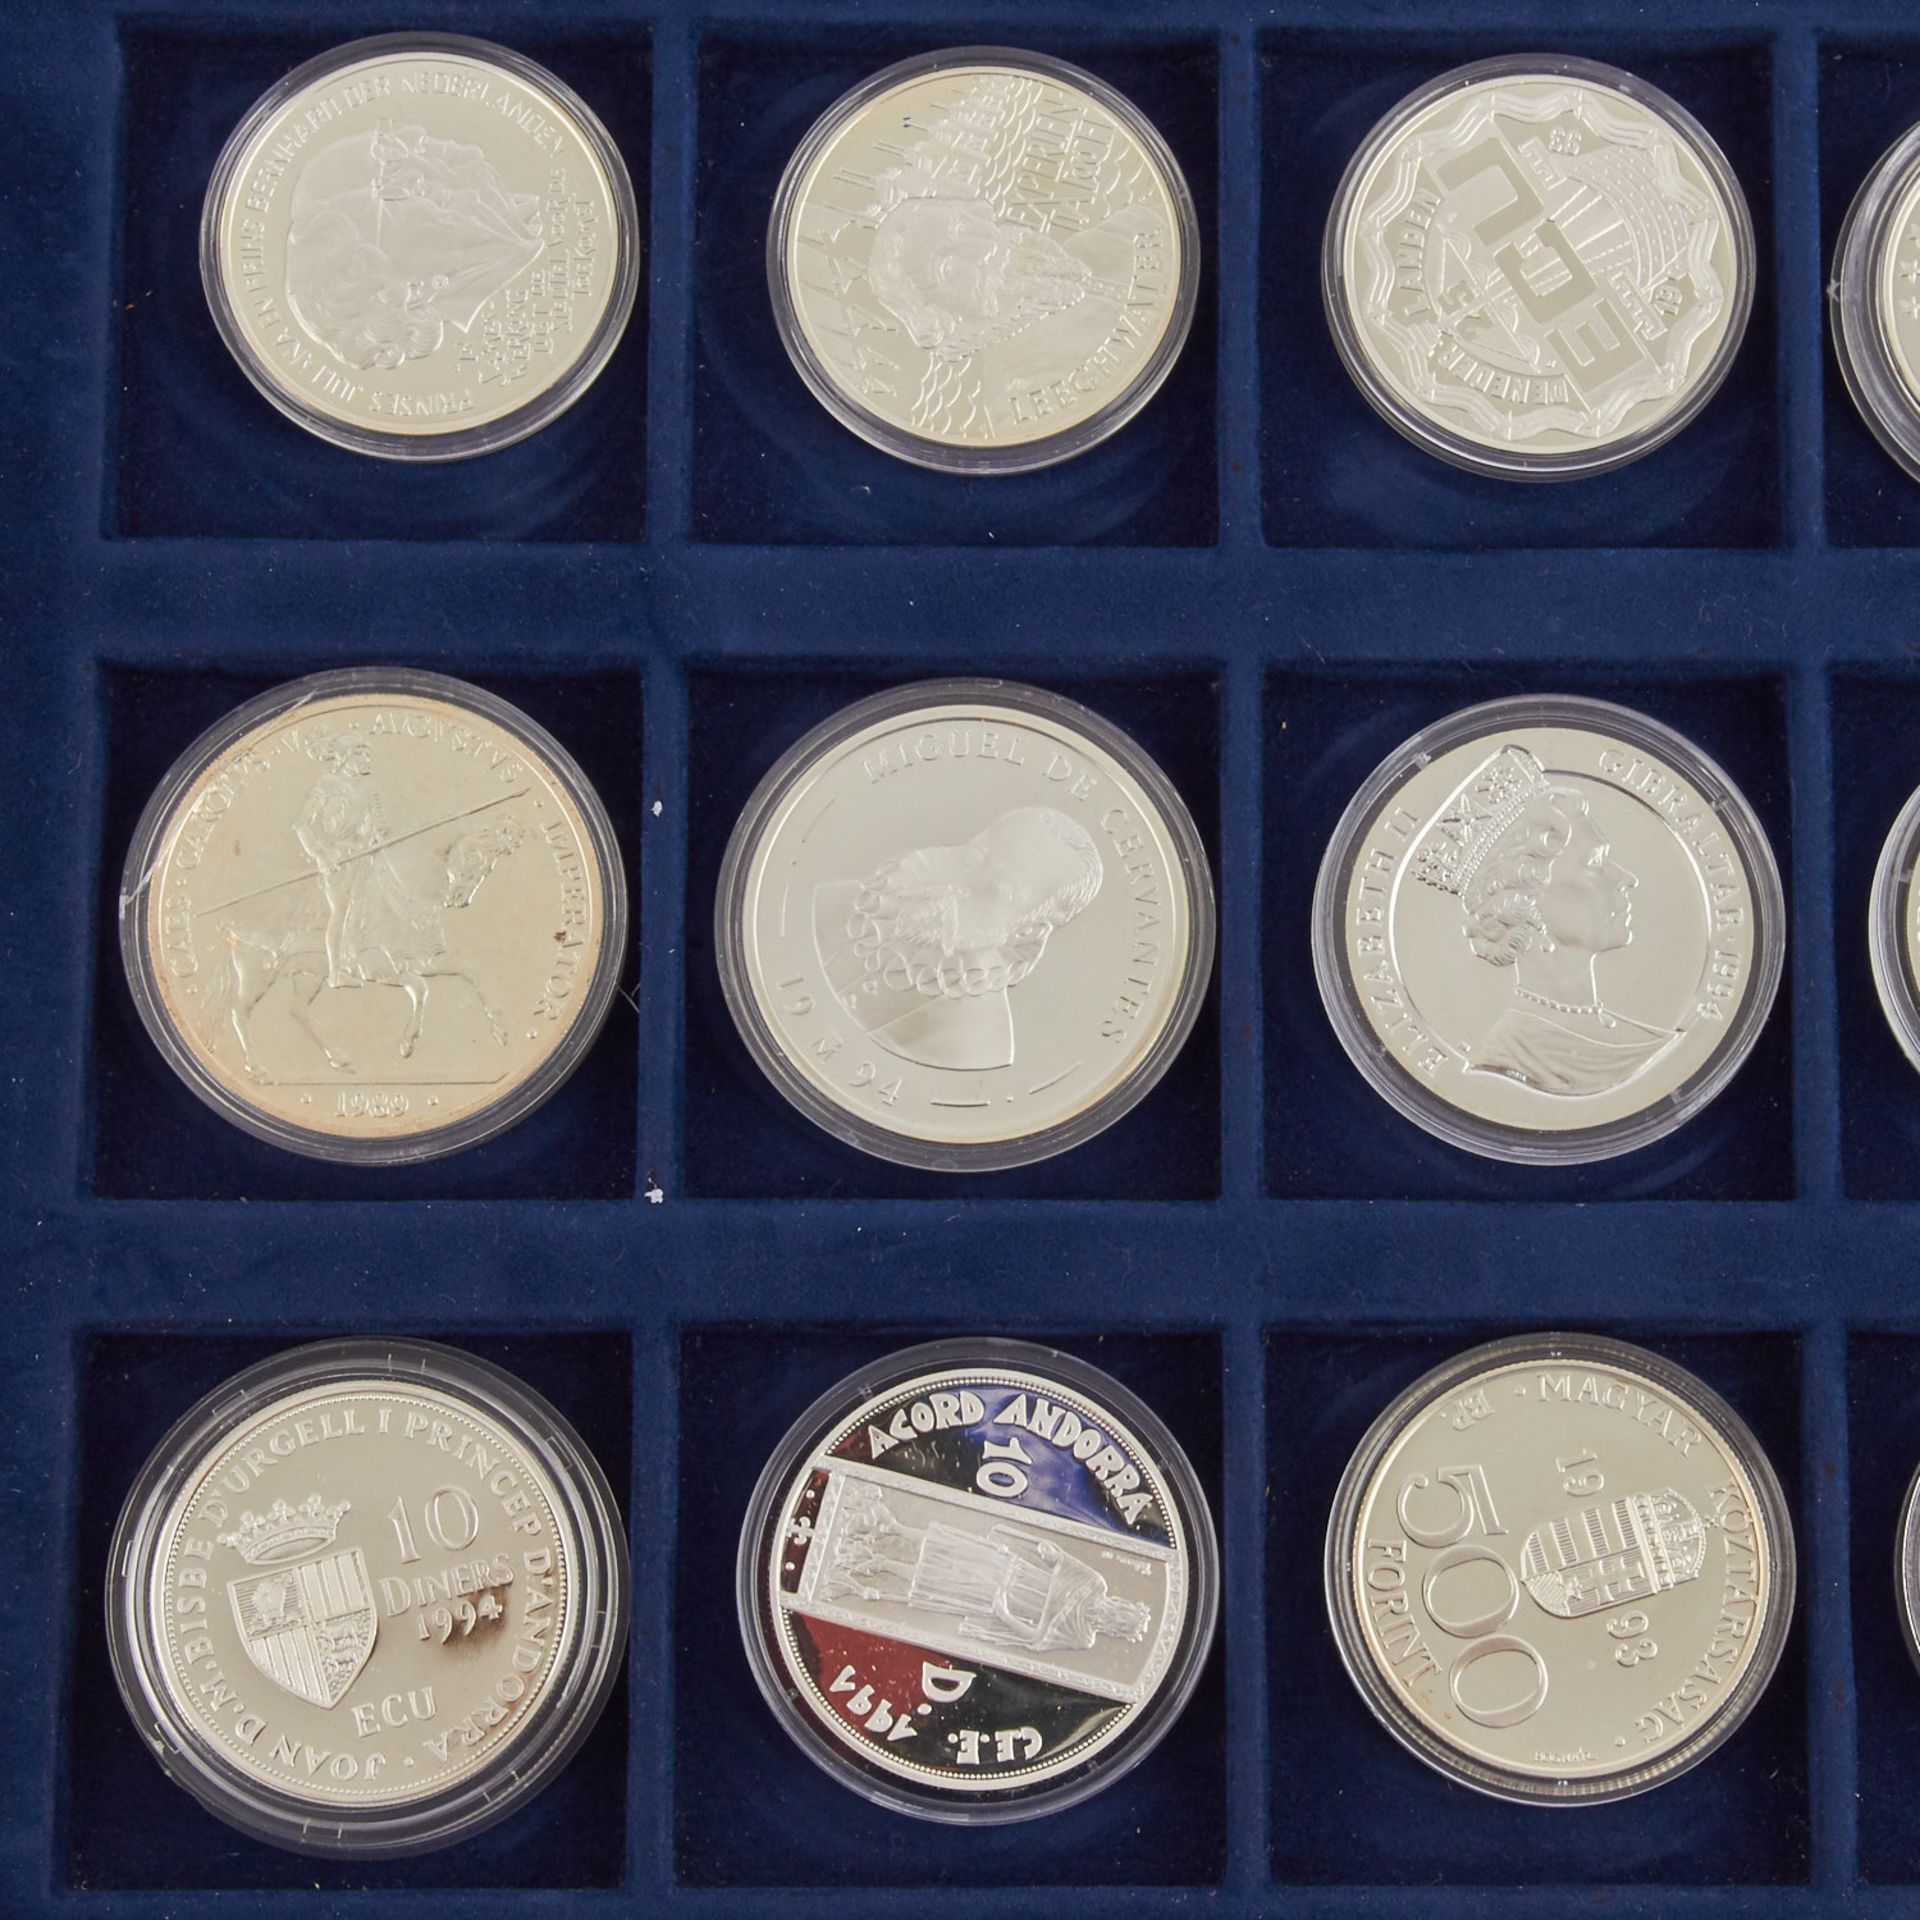 ECU Sammlung mit 33 Münzen in Samtschatulle,darunter u.a. Bimetall Gold/Silber Andorra 20 Dinars - Bild 6 aus 7